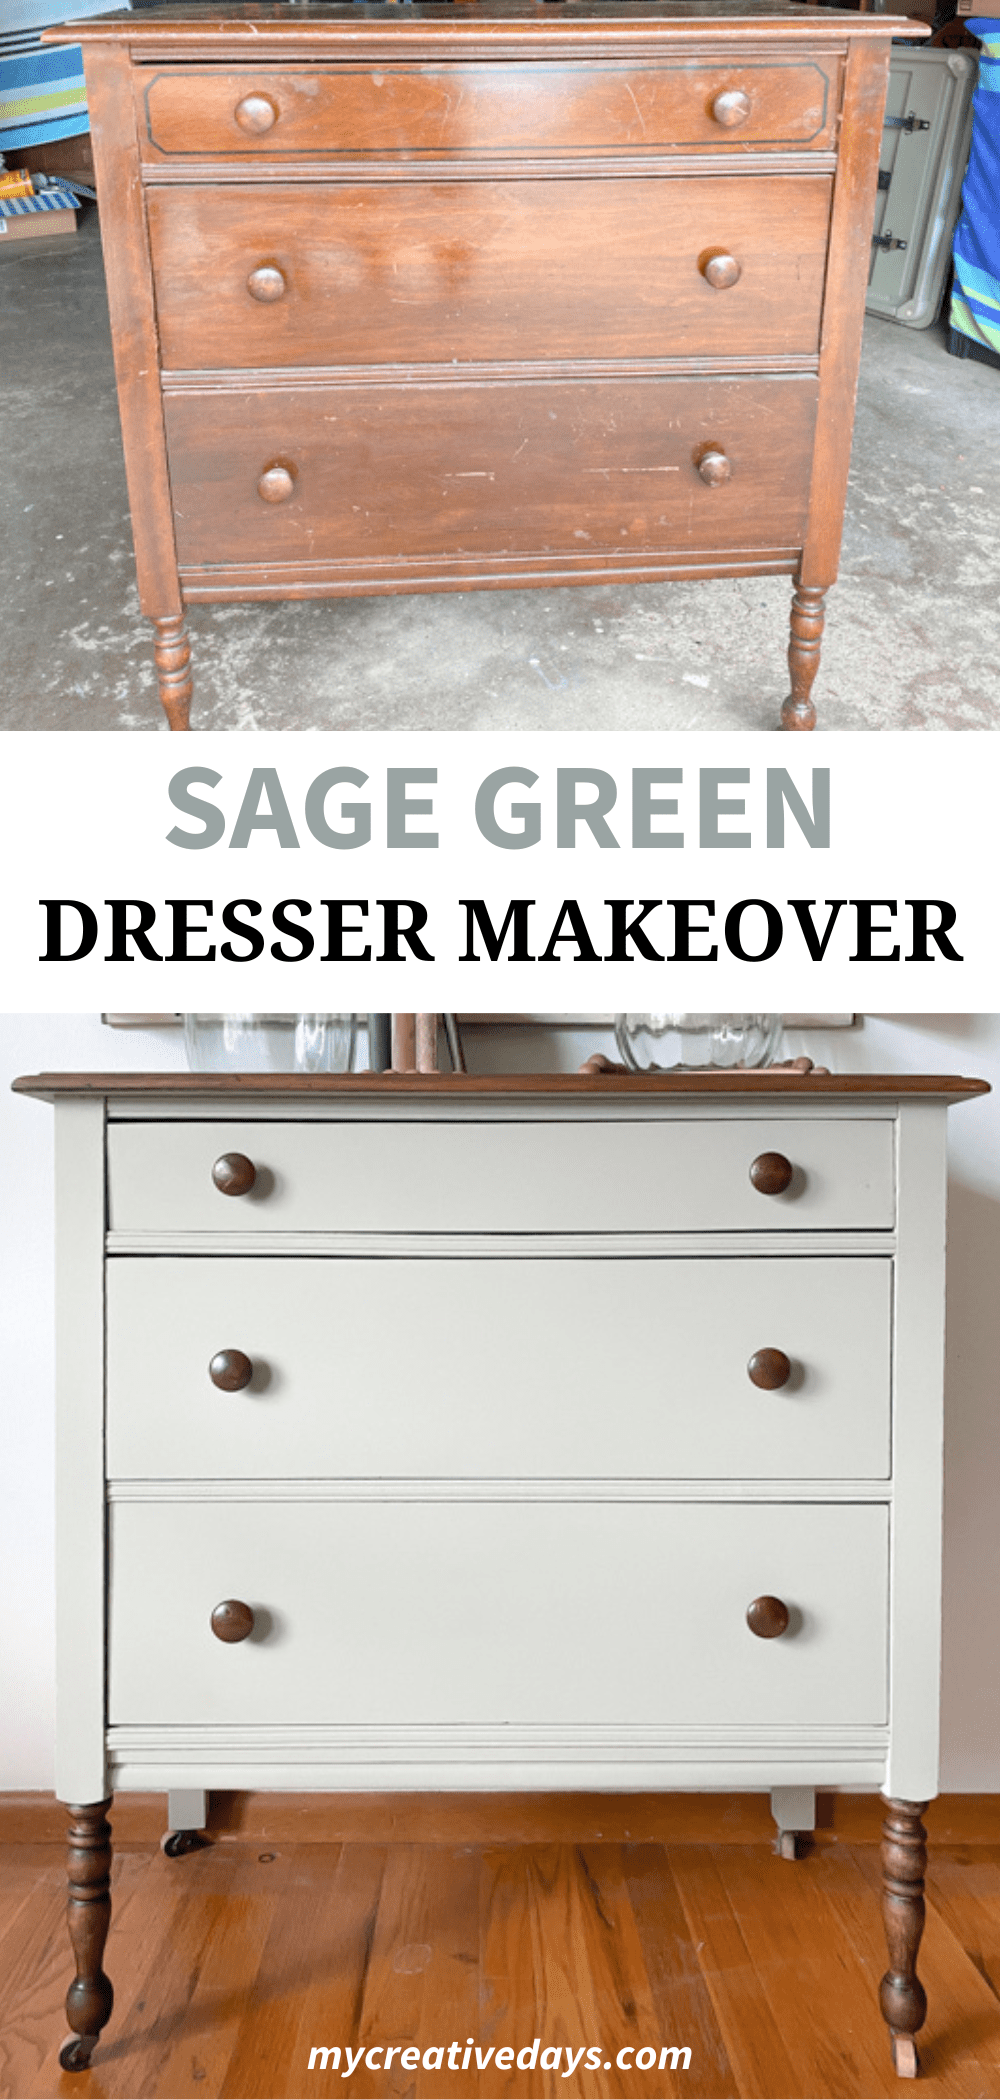 Sage Green Dresser Makeover - My Creative Days